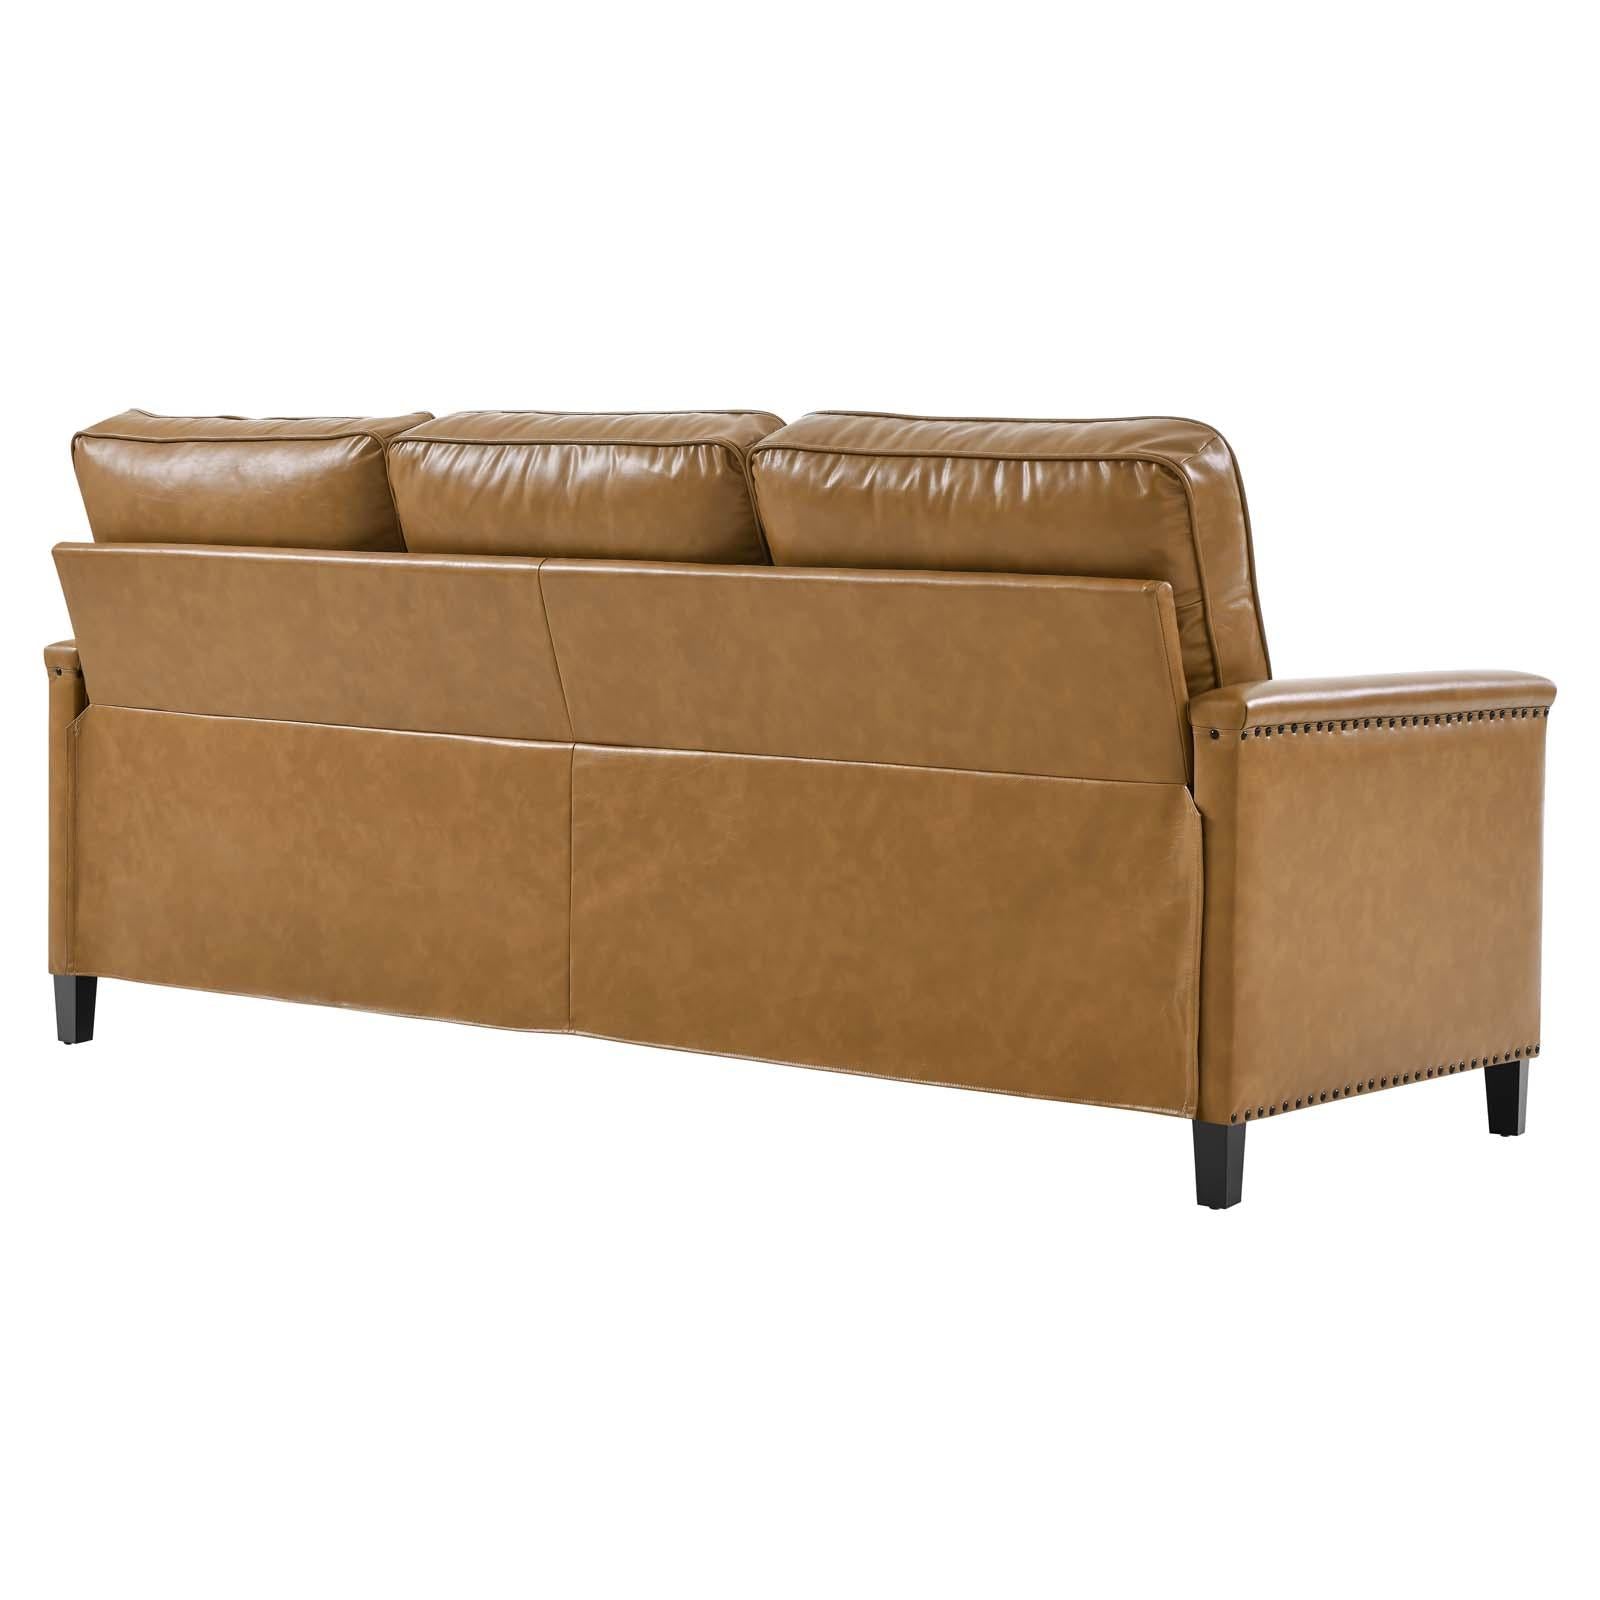 Modway Furniture Modern Ashton Vegan Leather Sectional Sofa - EEI-4996